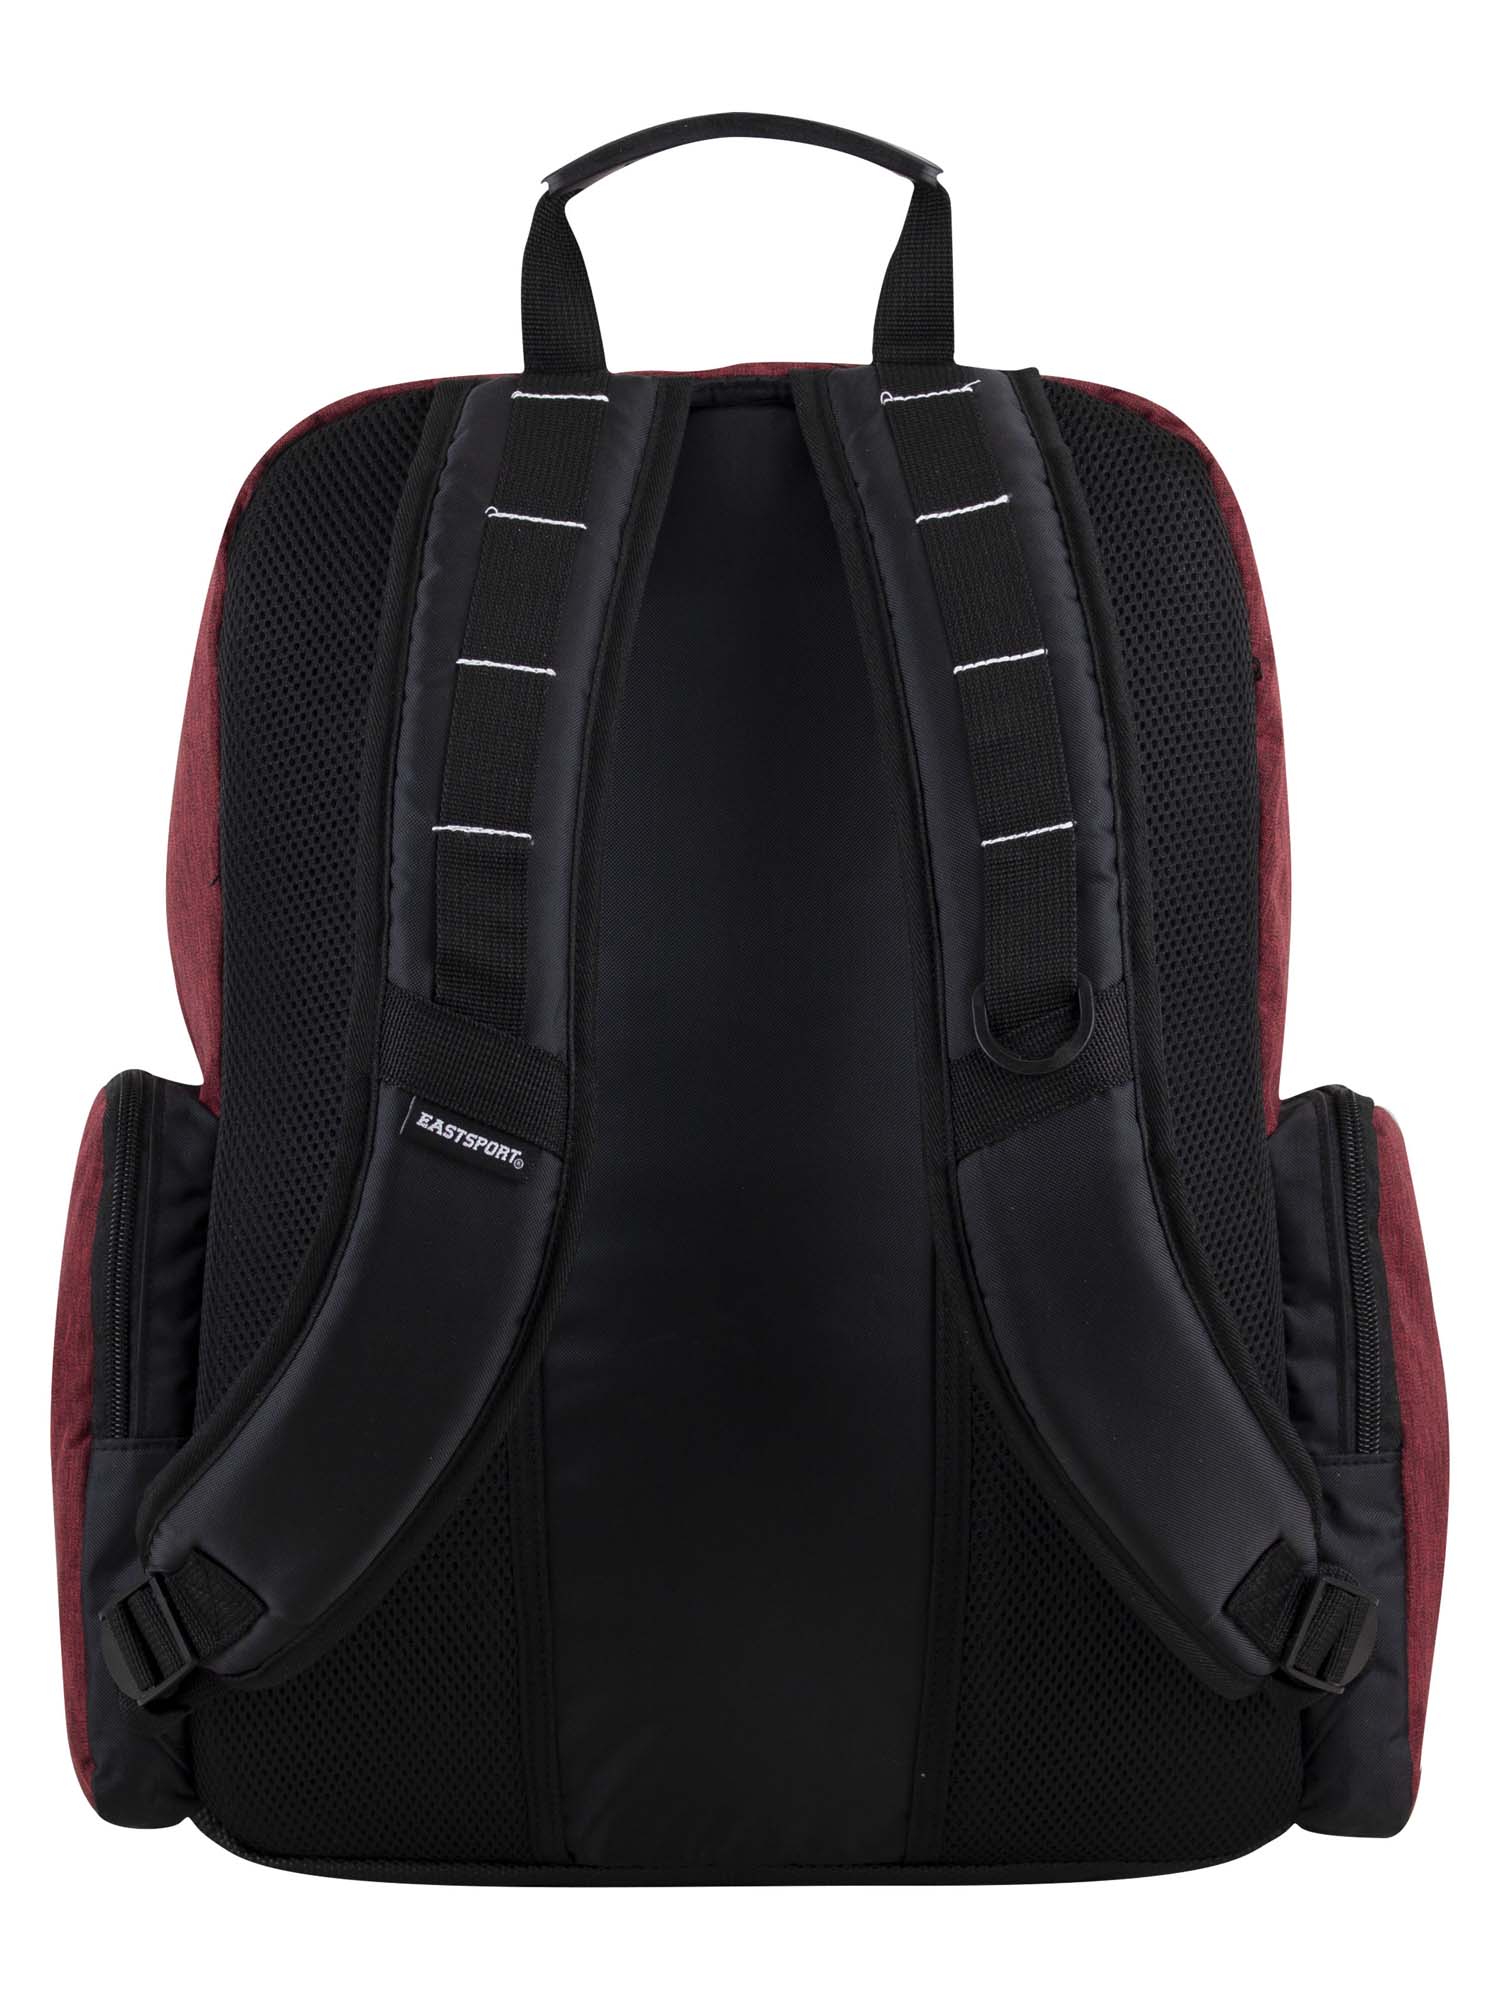 Eastsport Optimus Backpack, Maroon - image 3 of 7